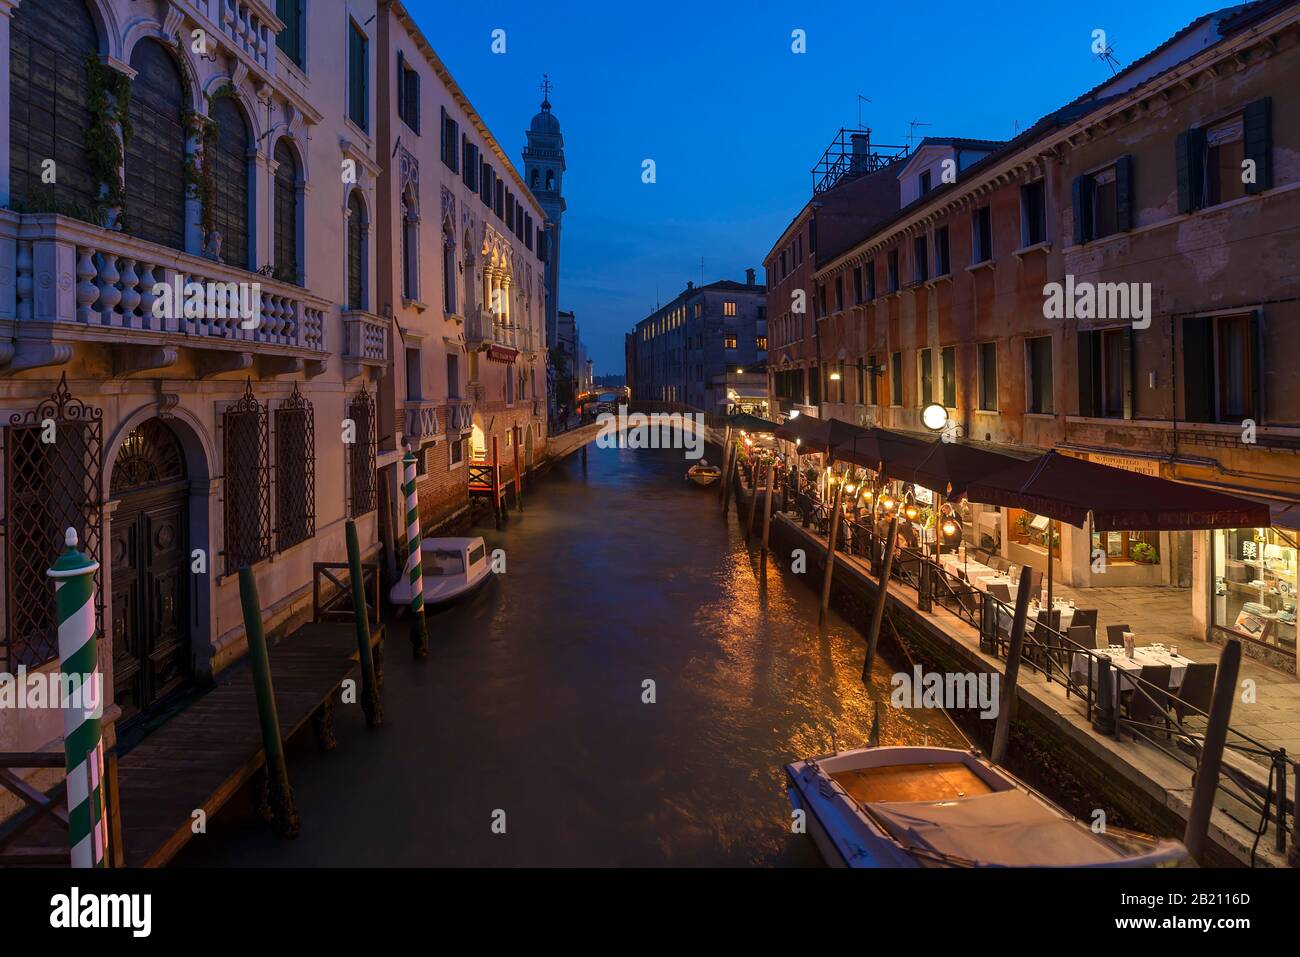 Atmosfera serale con ristorante sul canale, sul retro la torre della chiesa di Santa Maria della Pieta, Venezia, Veneto. Italia Foto Stock